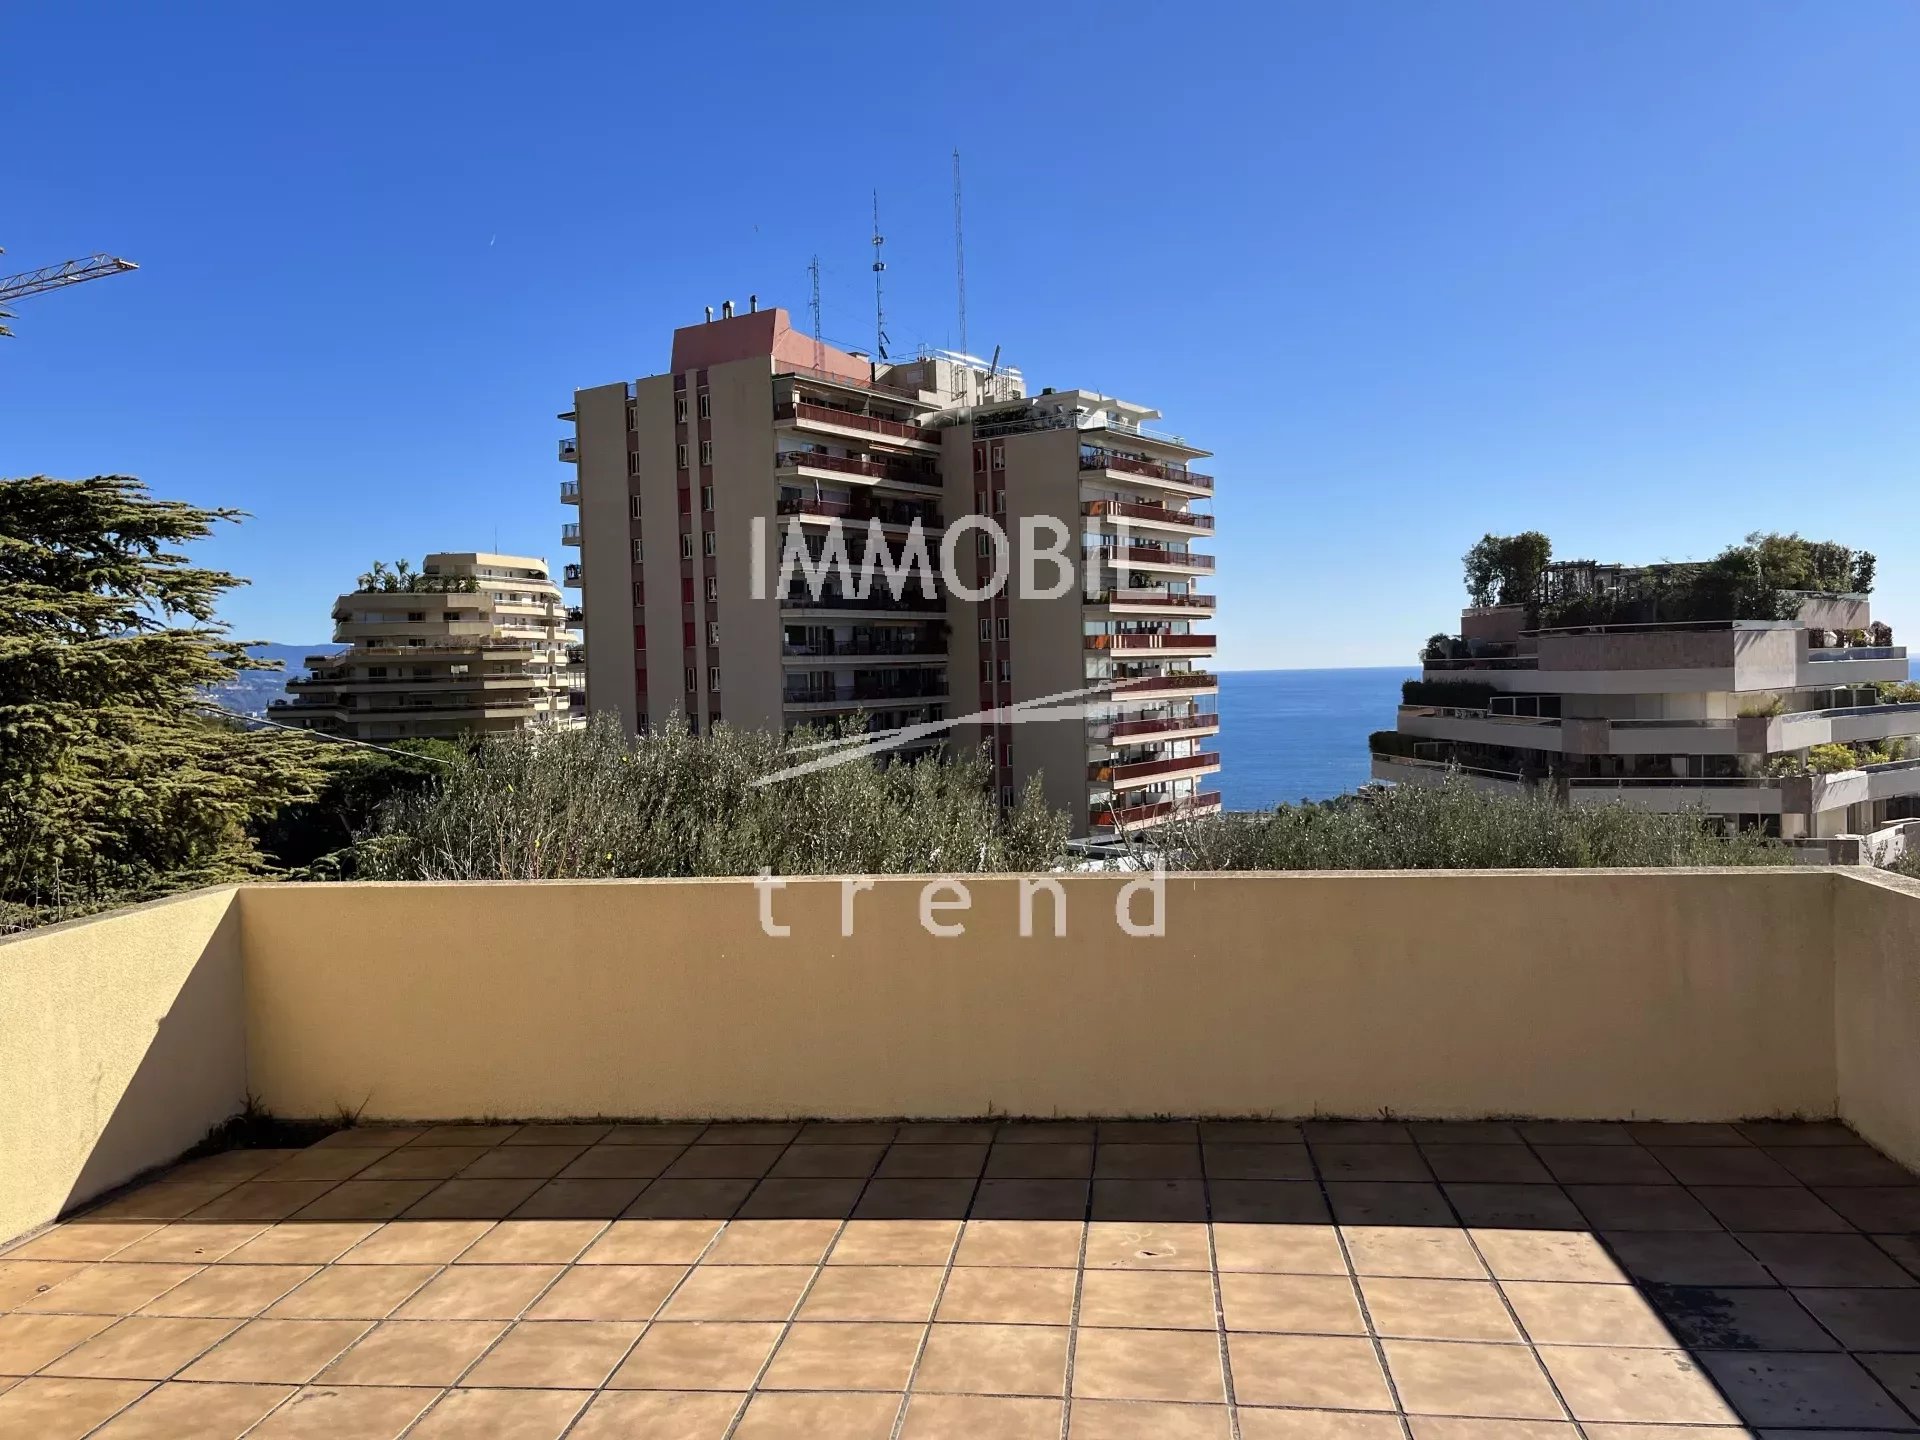 Immobilier proche Monaco - A vendre belle maison contemporaine avec vue mer, terrasses et jardin, limitrophe Monaco